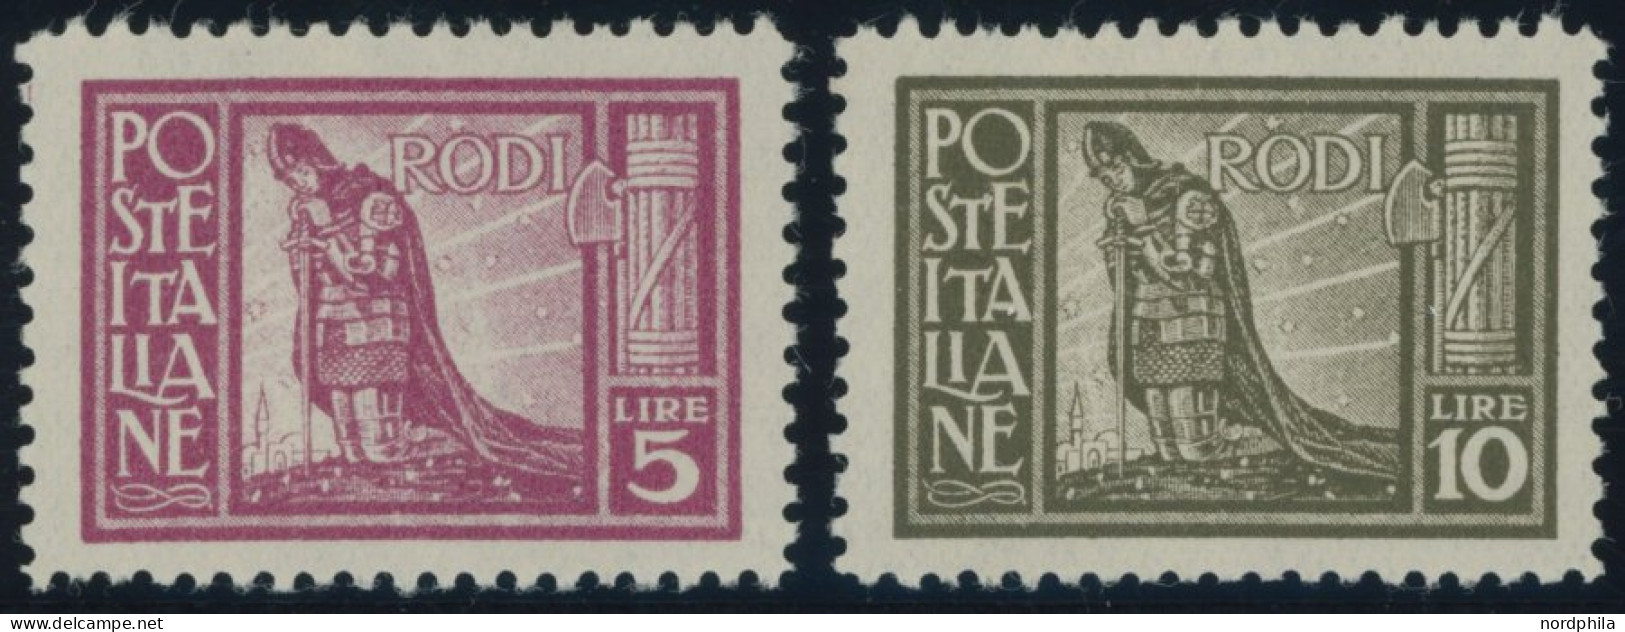 ÄGÄISCHE INSELN 24/5 *, 1929, 5 Und 10 L. RODI, Falzrest, 2 Prachtwerte - Sonstige - Europa